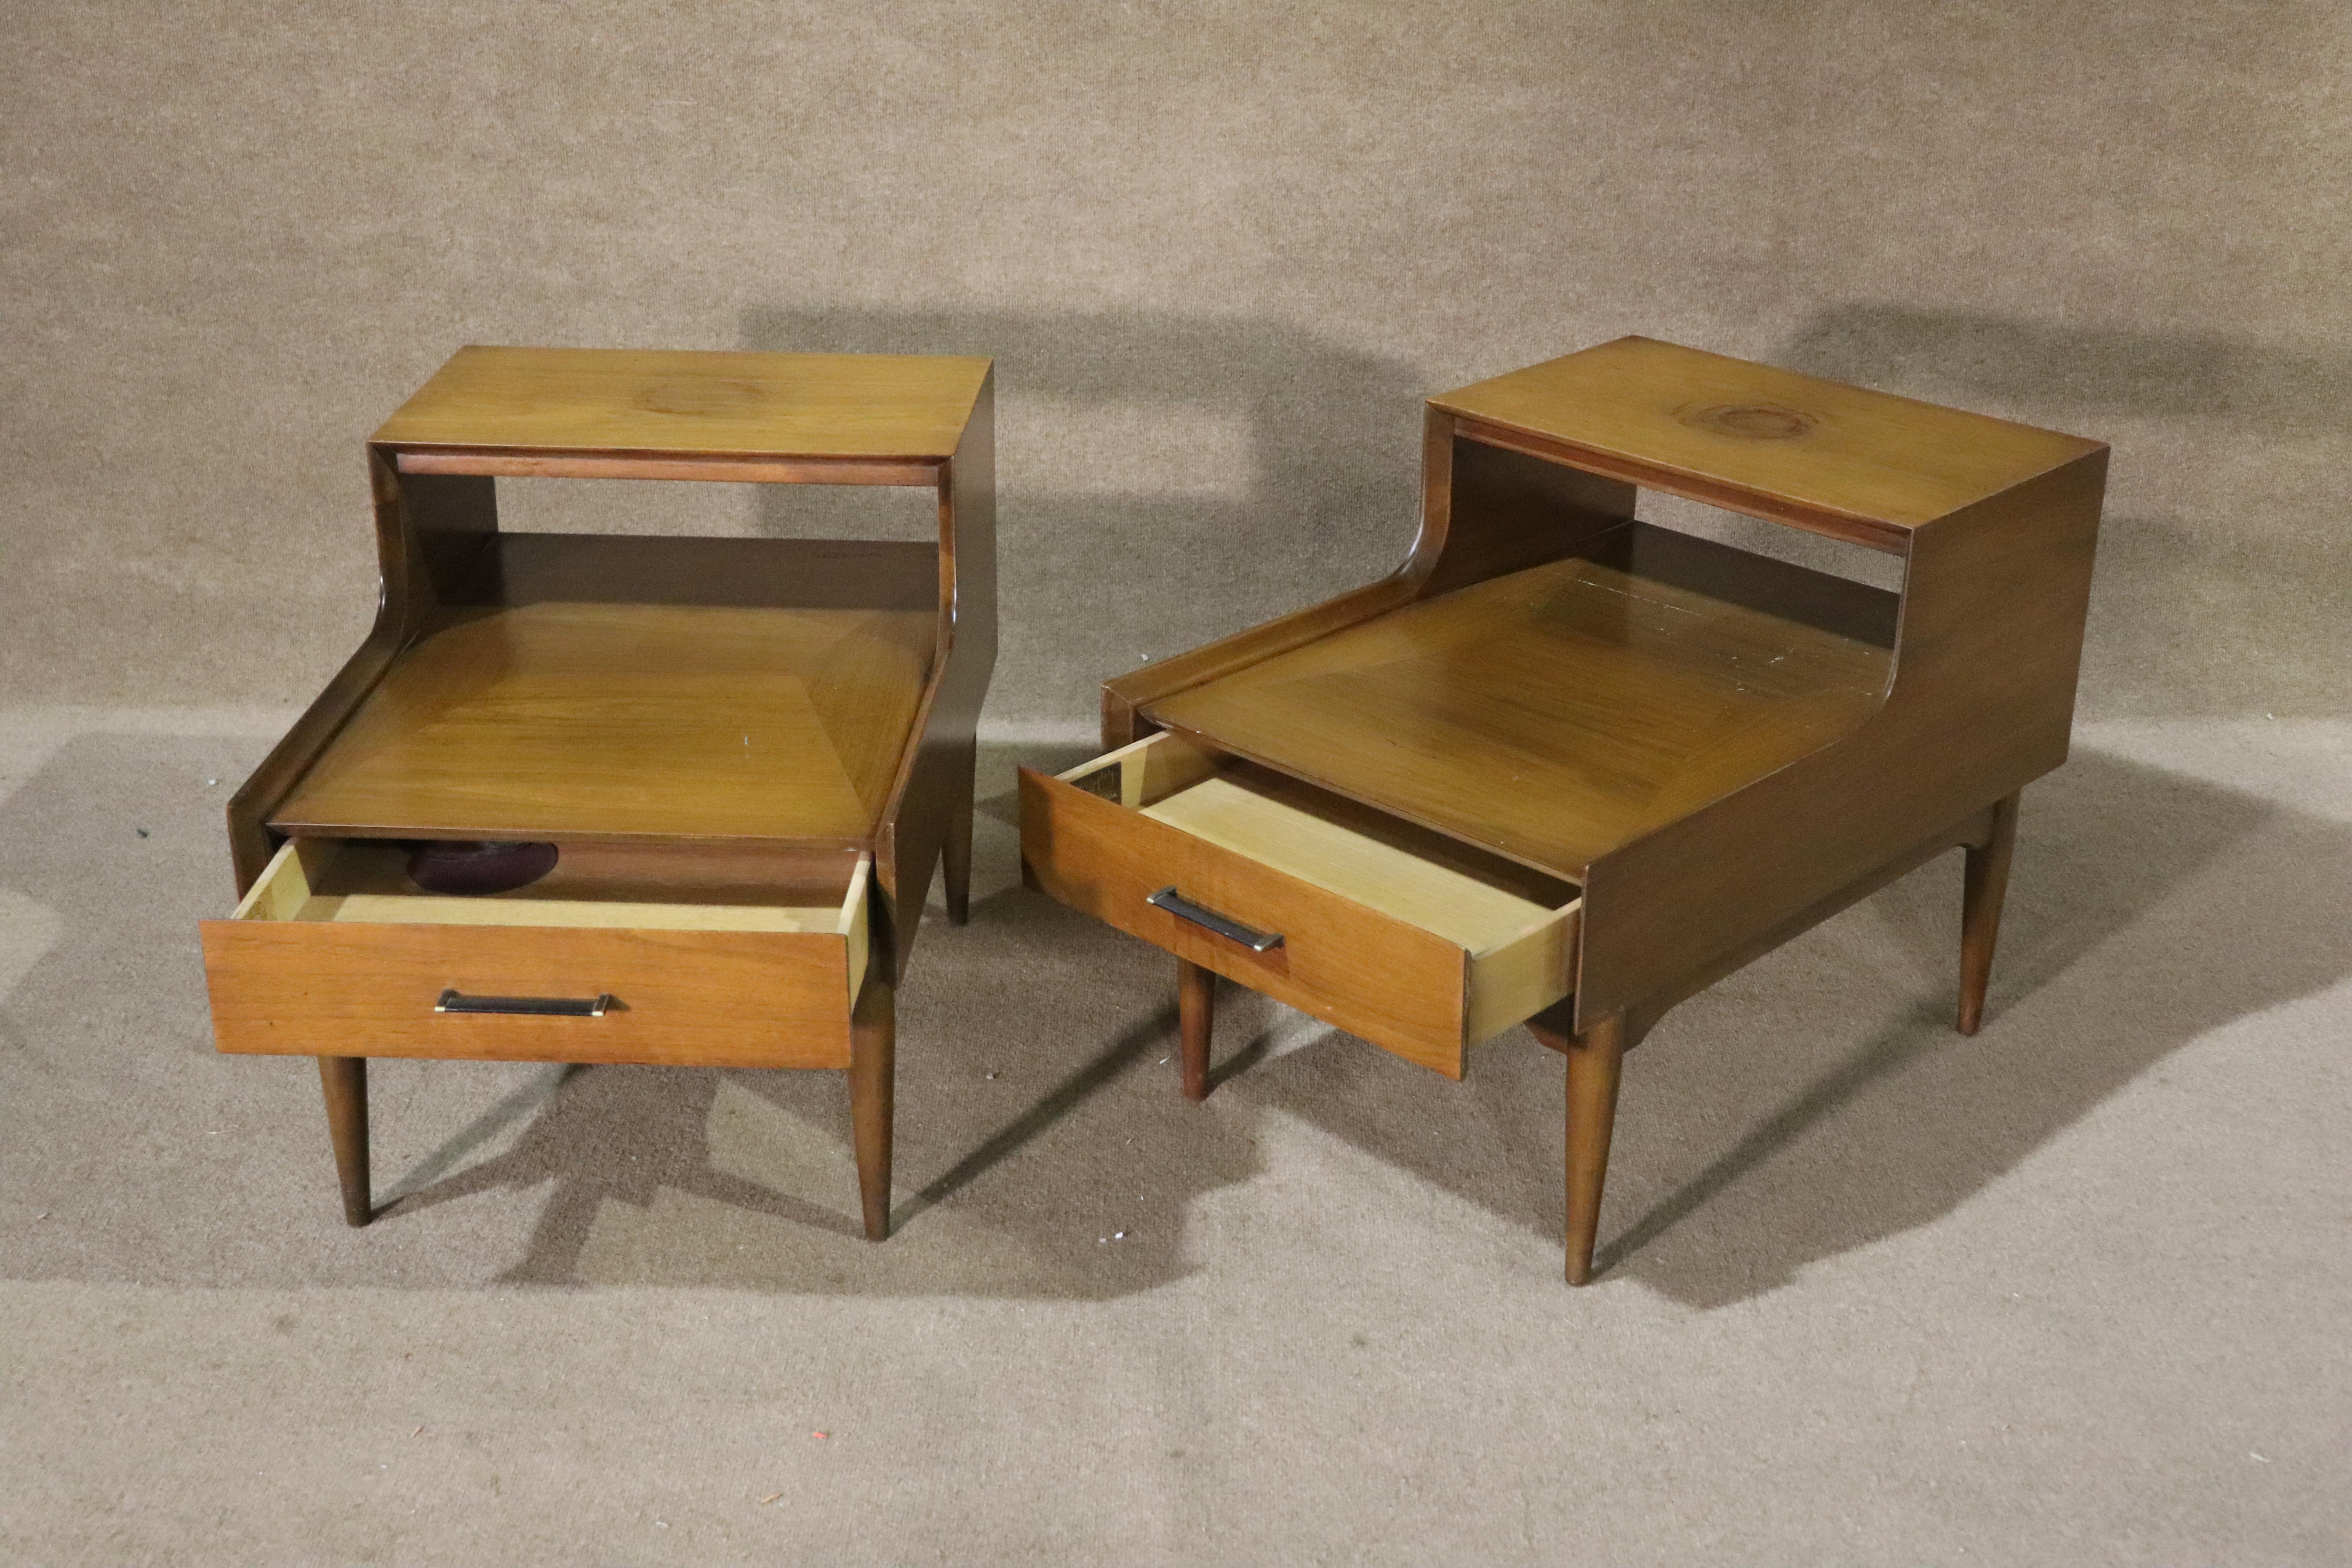 Tables d'appoint modernes du milieu du siècle fabriquées par Ramseur Furniture. Tables à étages avec tiroirs de rangement.
Veuillez confirmer le lieu NY ou NJ